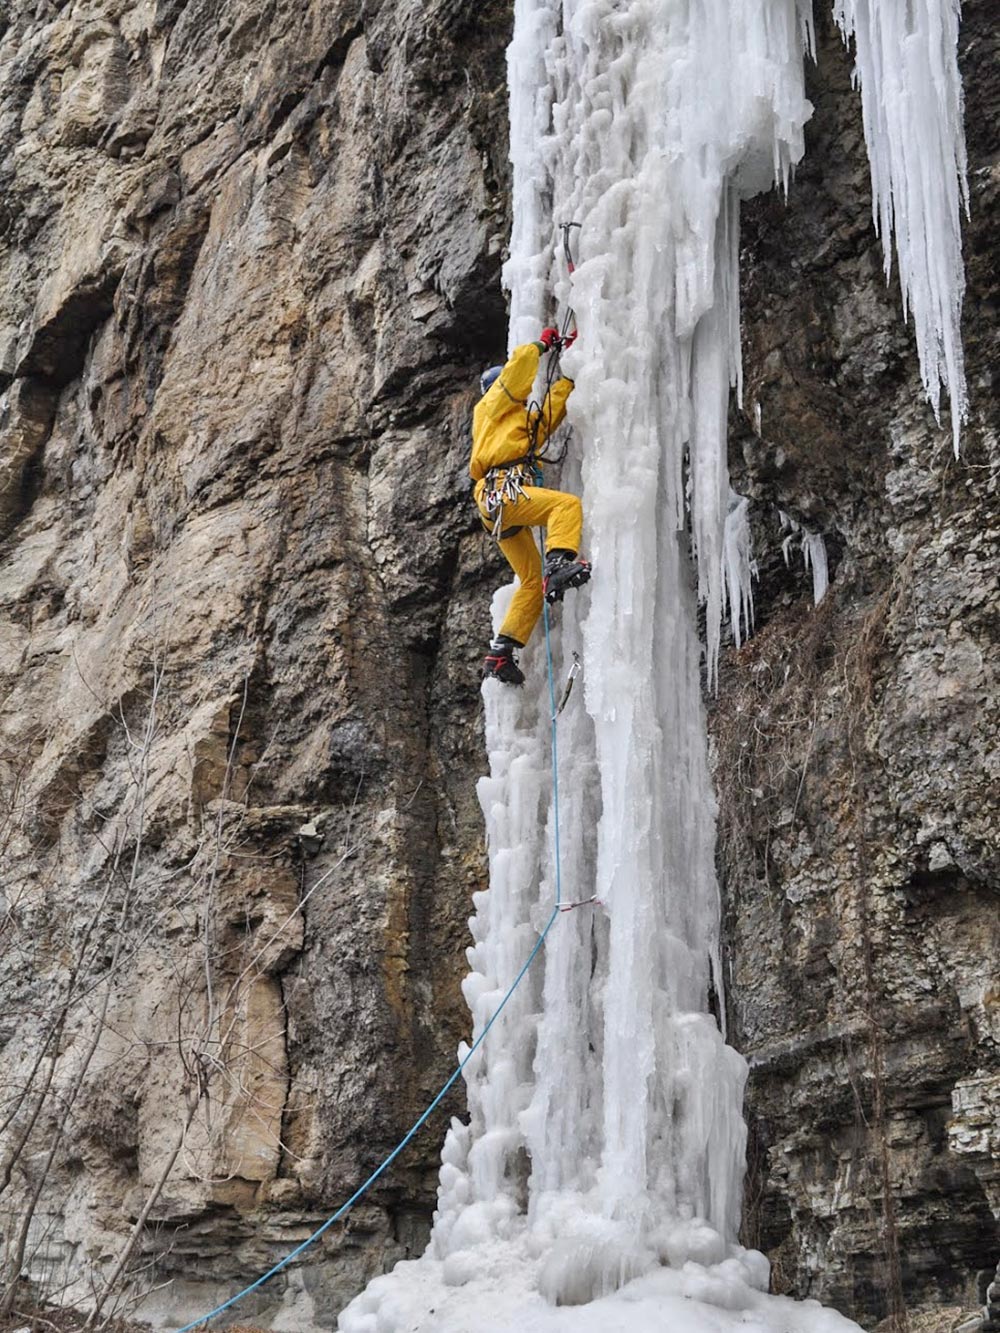 Ледолазный выезд турклуба на замерзшие водопады Каменца-Подольского. Здесь учились работать с ледовым снаряжением: ледобурами, фифами, оттяжками, кошками и прочим